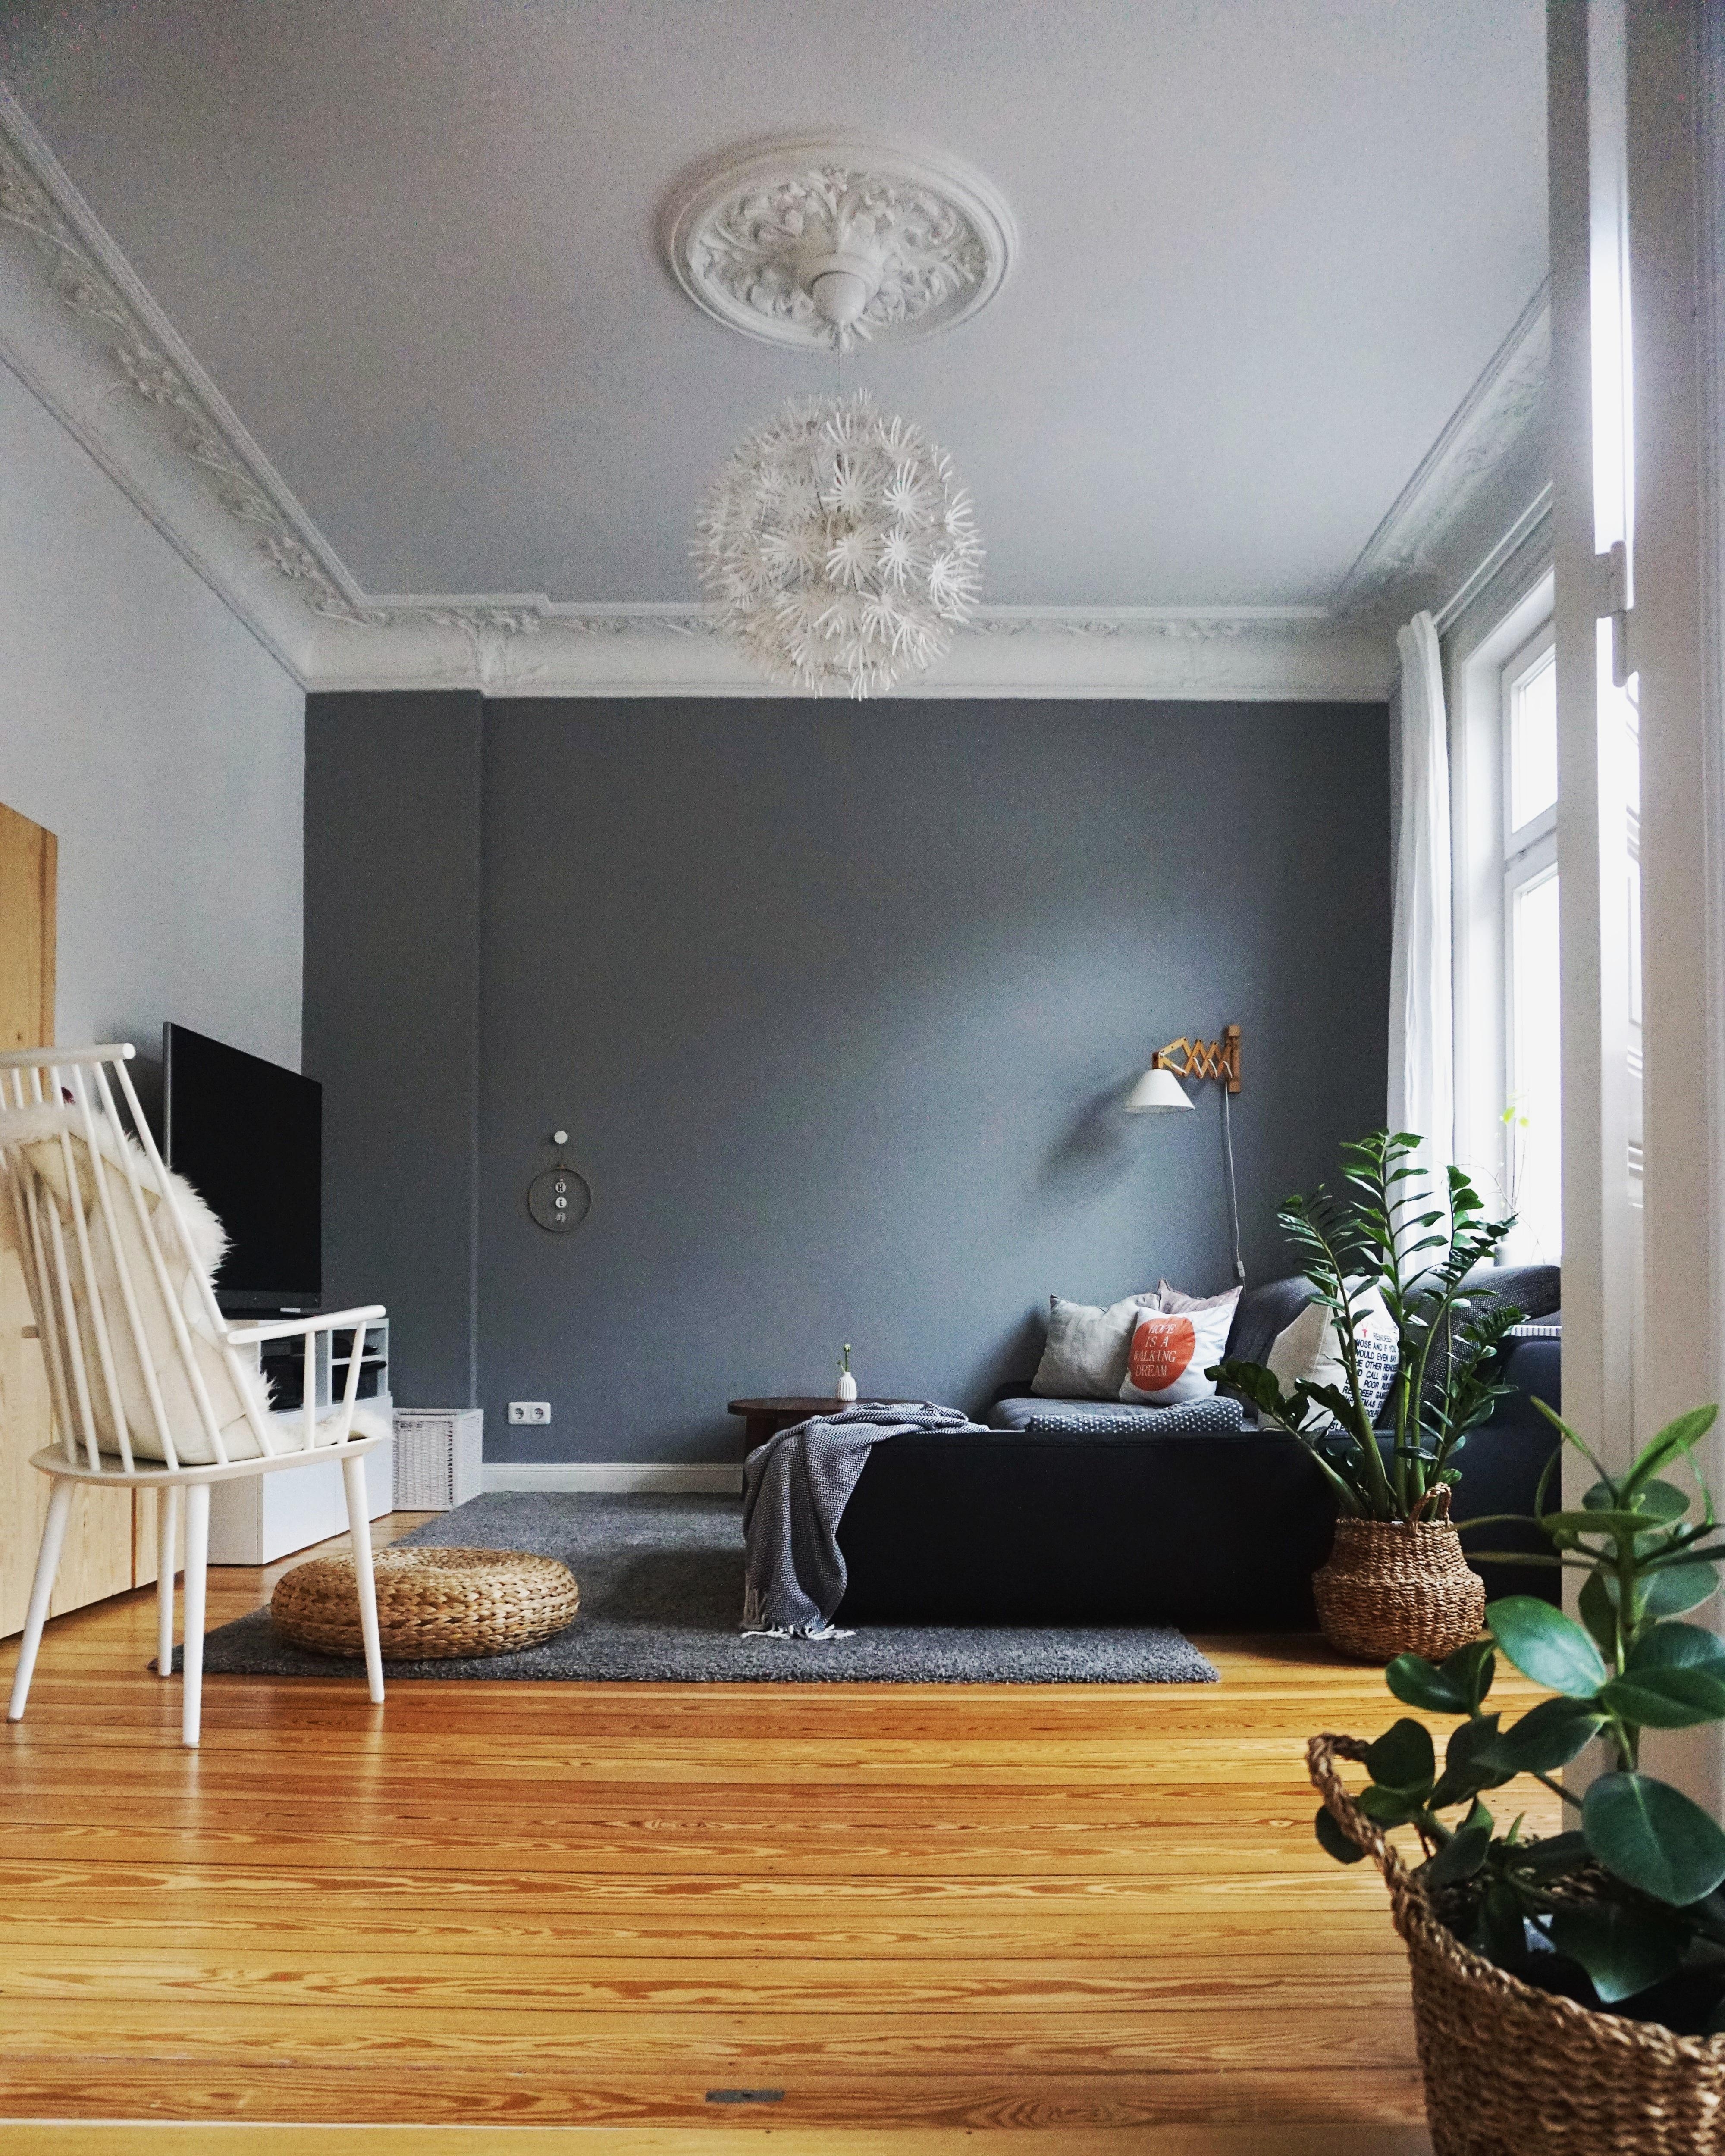 Unser Wohnzimmer 😊 #wohnzimmer #altbau #altbauliebe #couch #stuck 